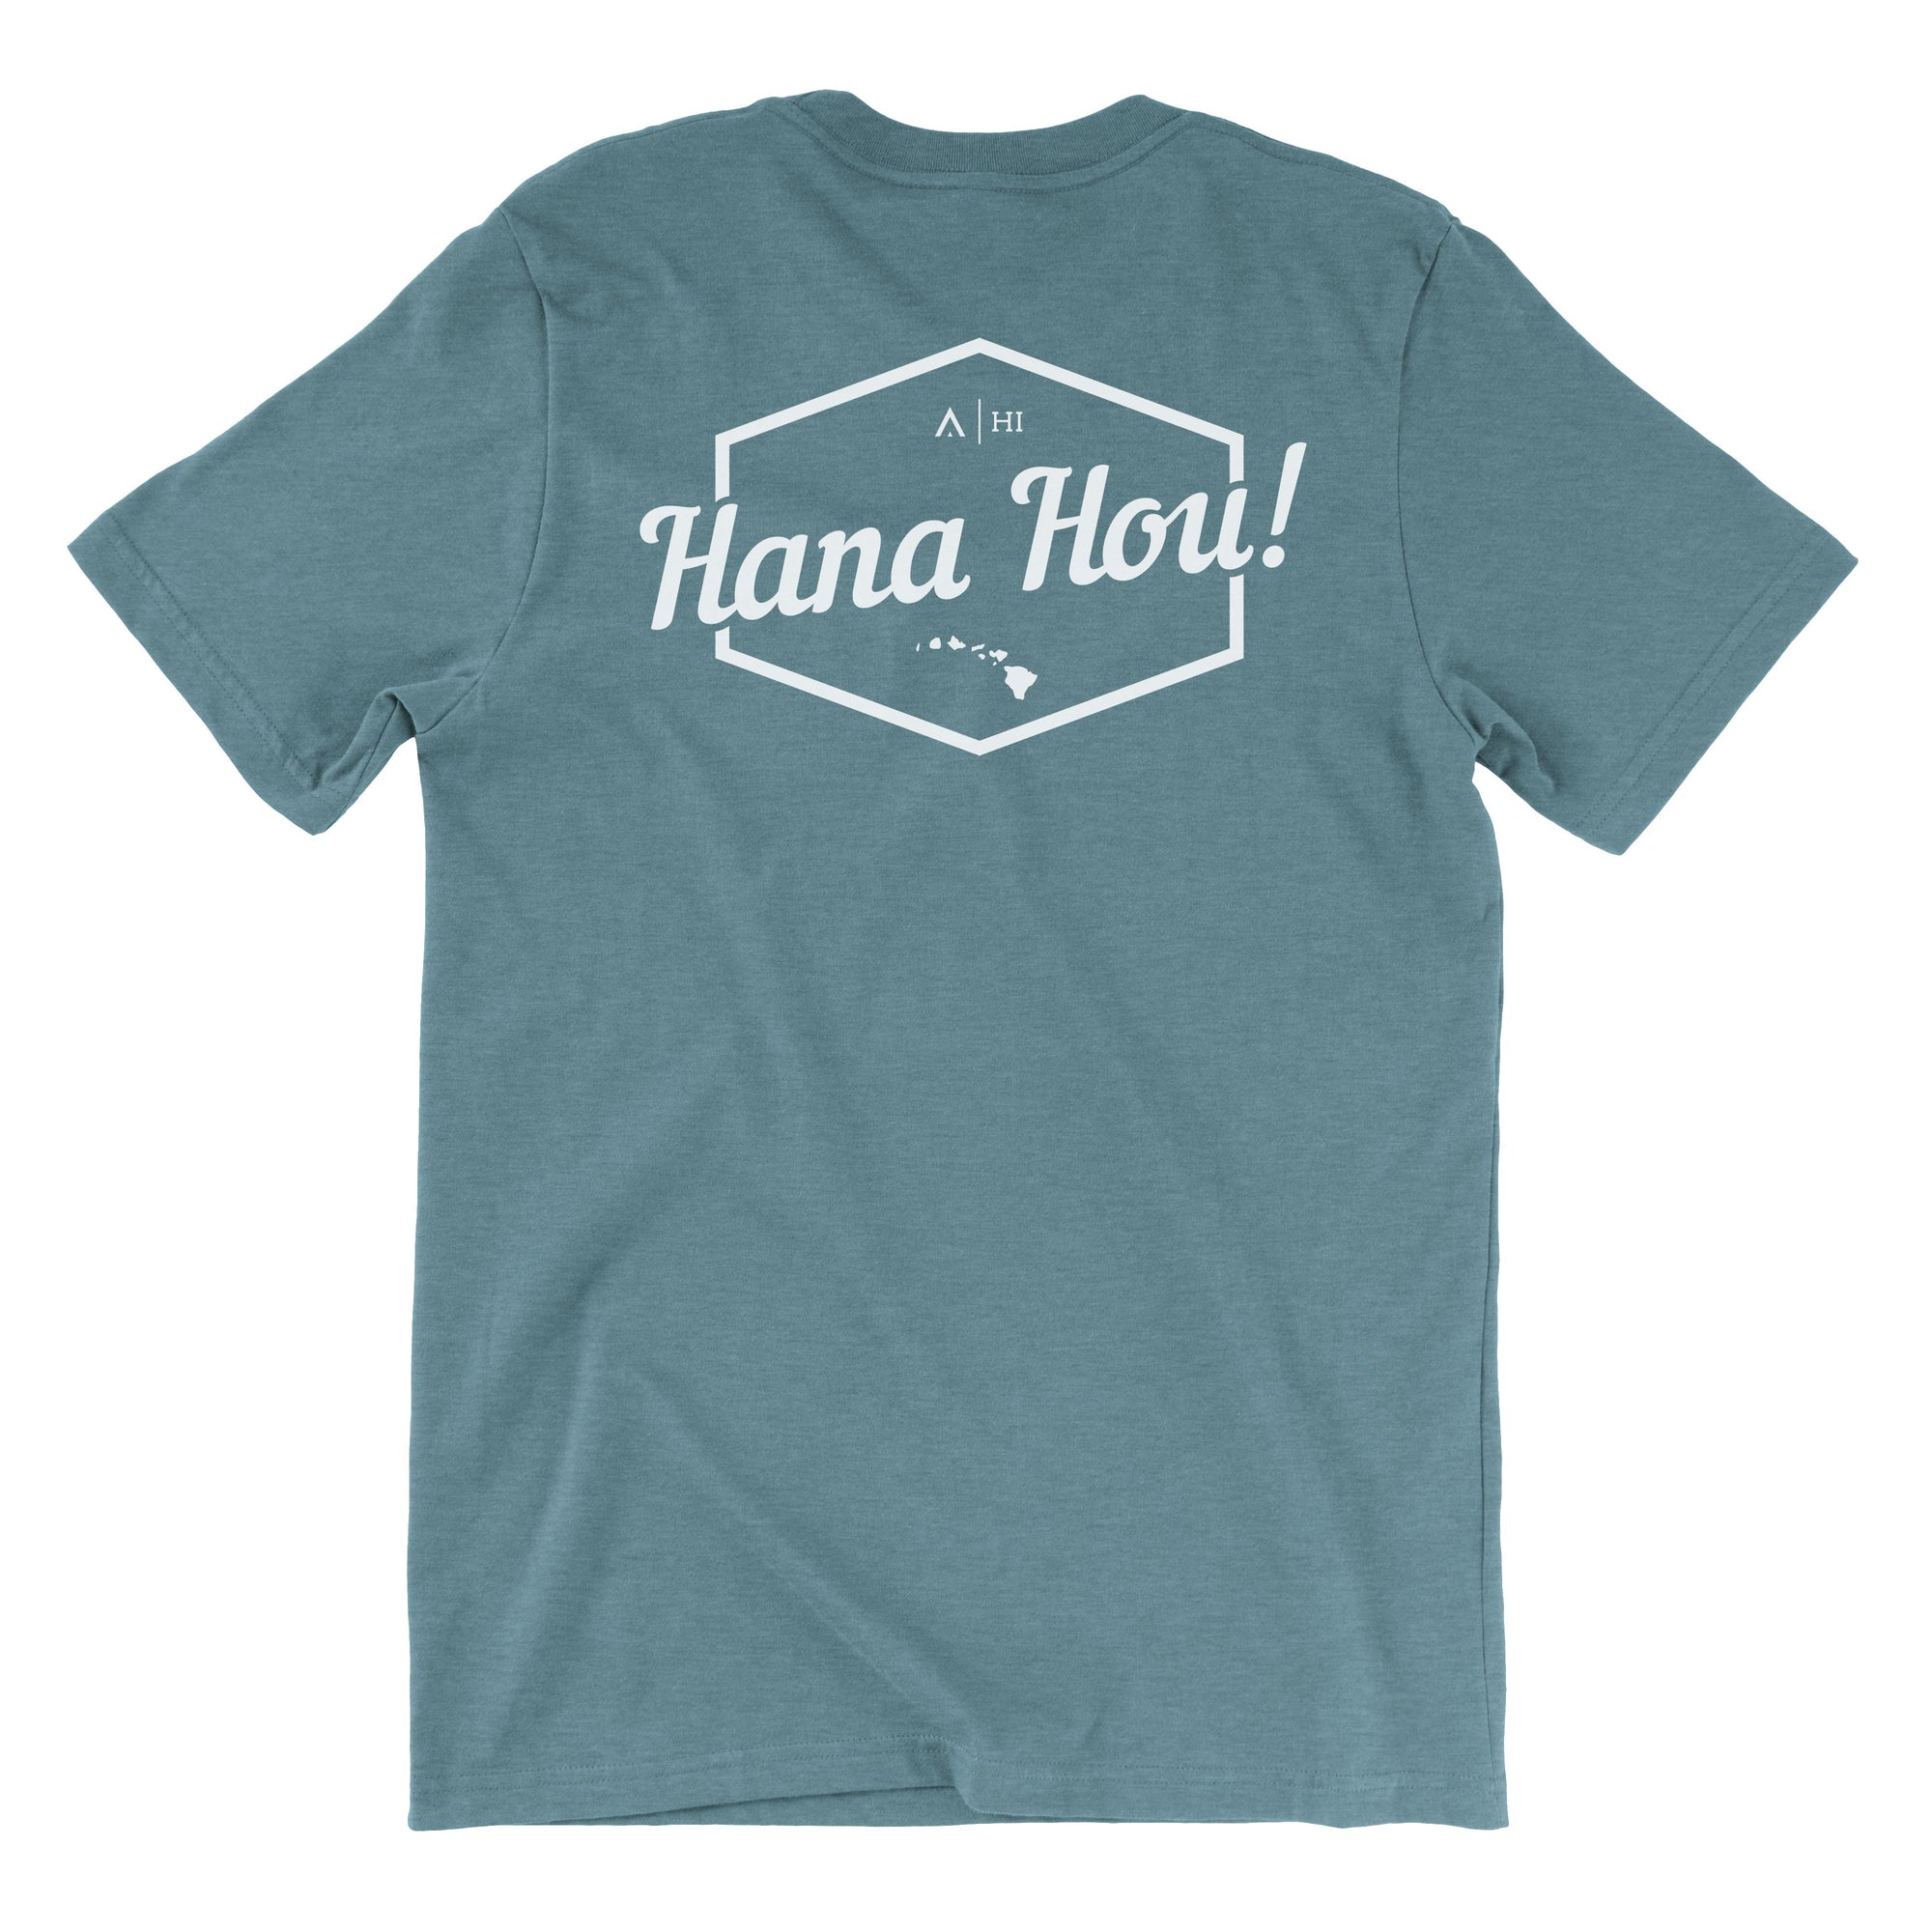 Pop-Up Mākeke - Aloha Ke Akua Clothing - Hana Hou Men's Short Sleeve T-Shirt - Heather Slate